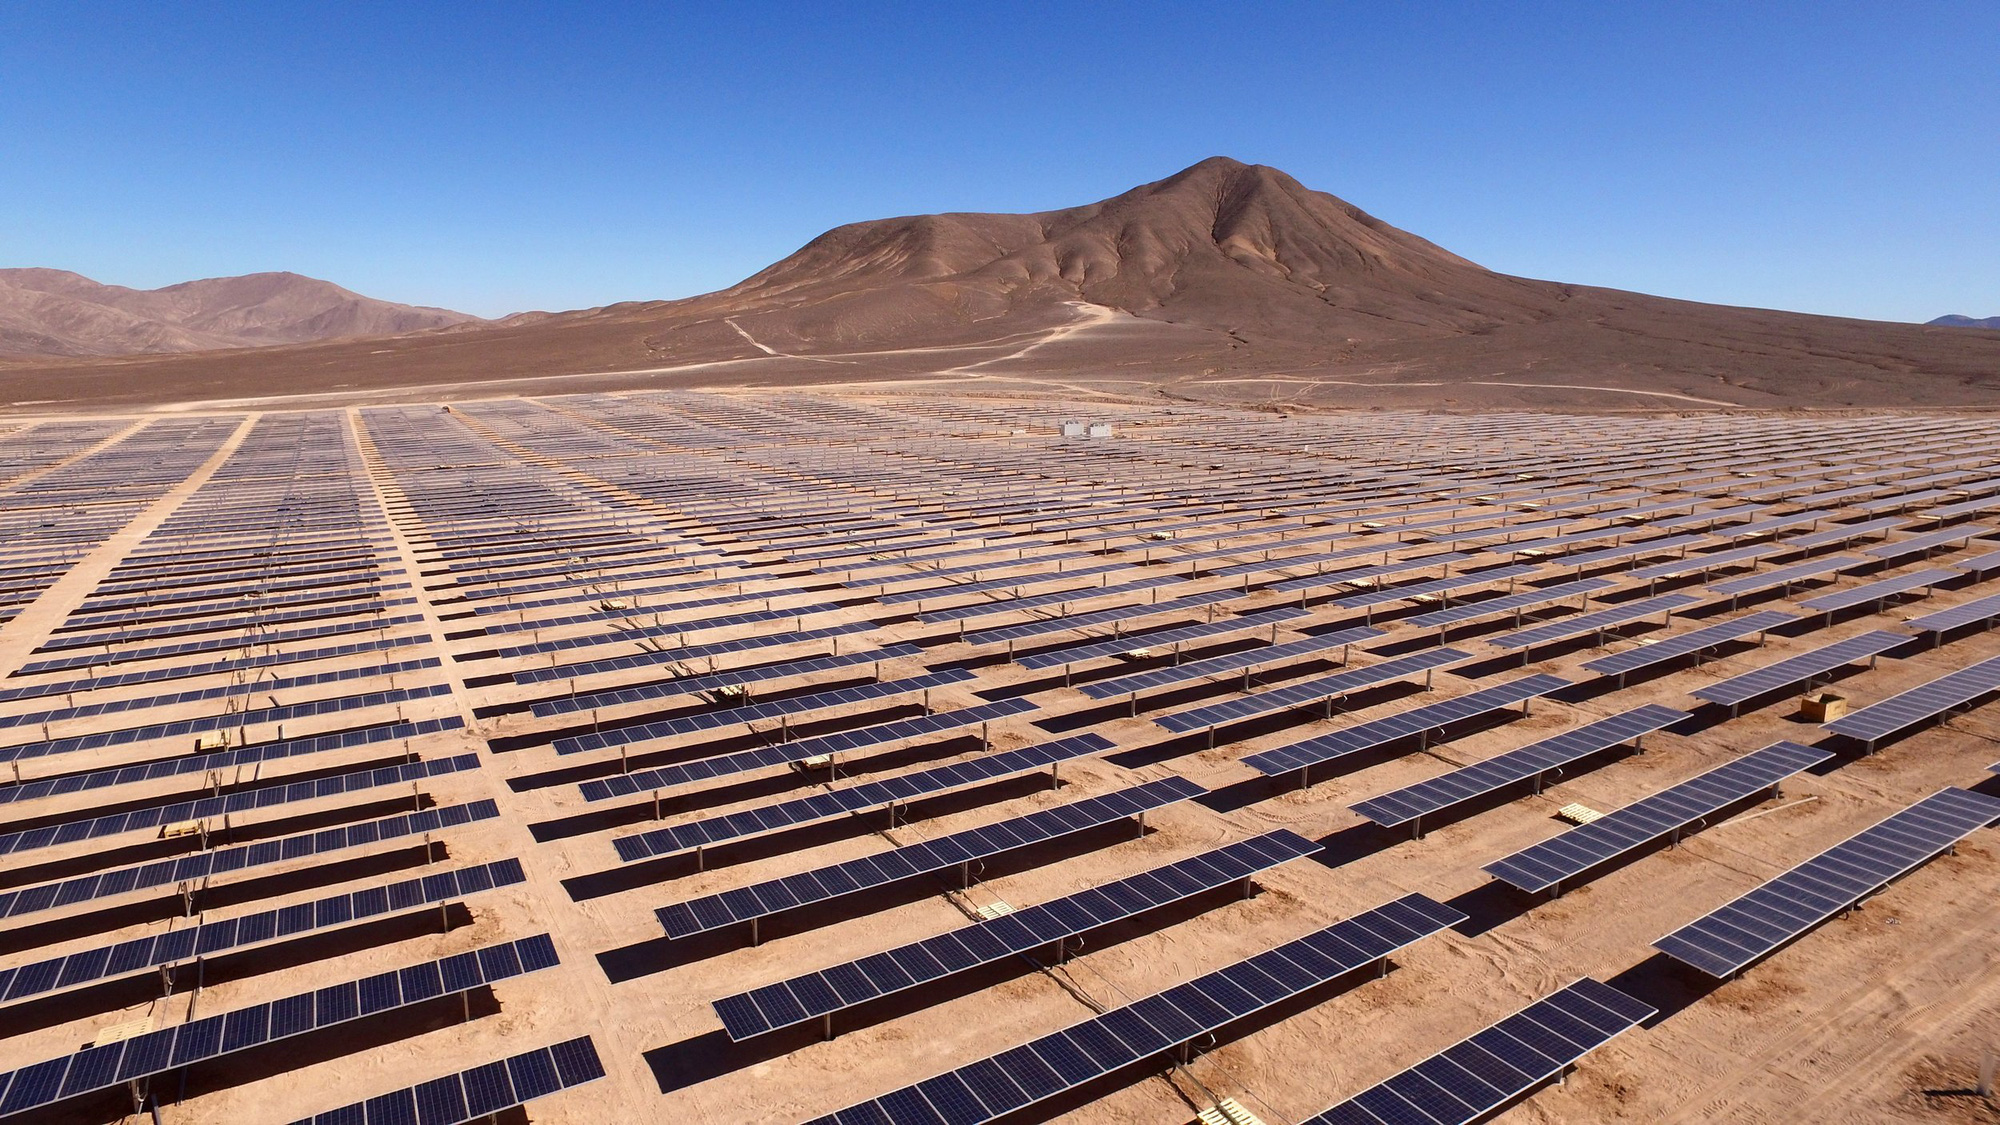 Mỗi năm sa mạc Sahara nhận năng lượng nhiều hơn mức tiêu thụ của nhân loại tới 100 lần, tại sao không phủ kín nó bằng pin Mặt trời? - Ảnh 2.